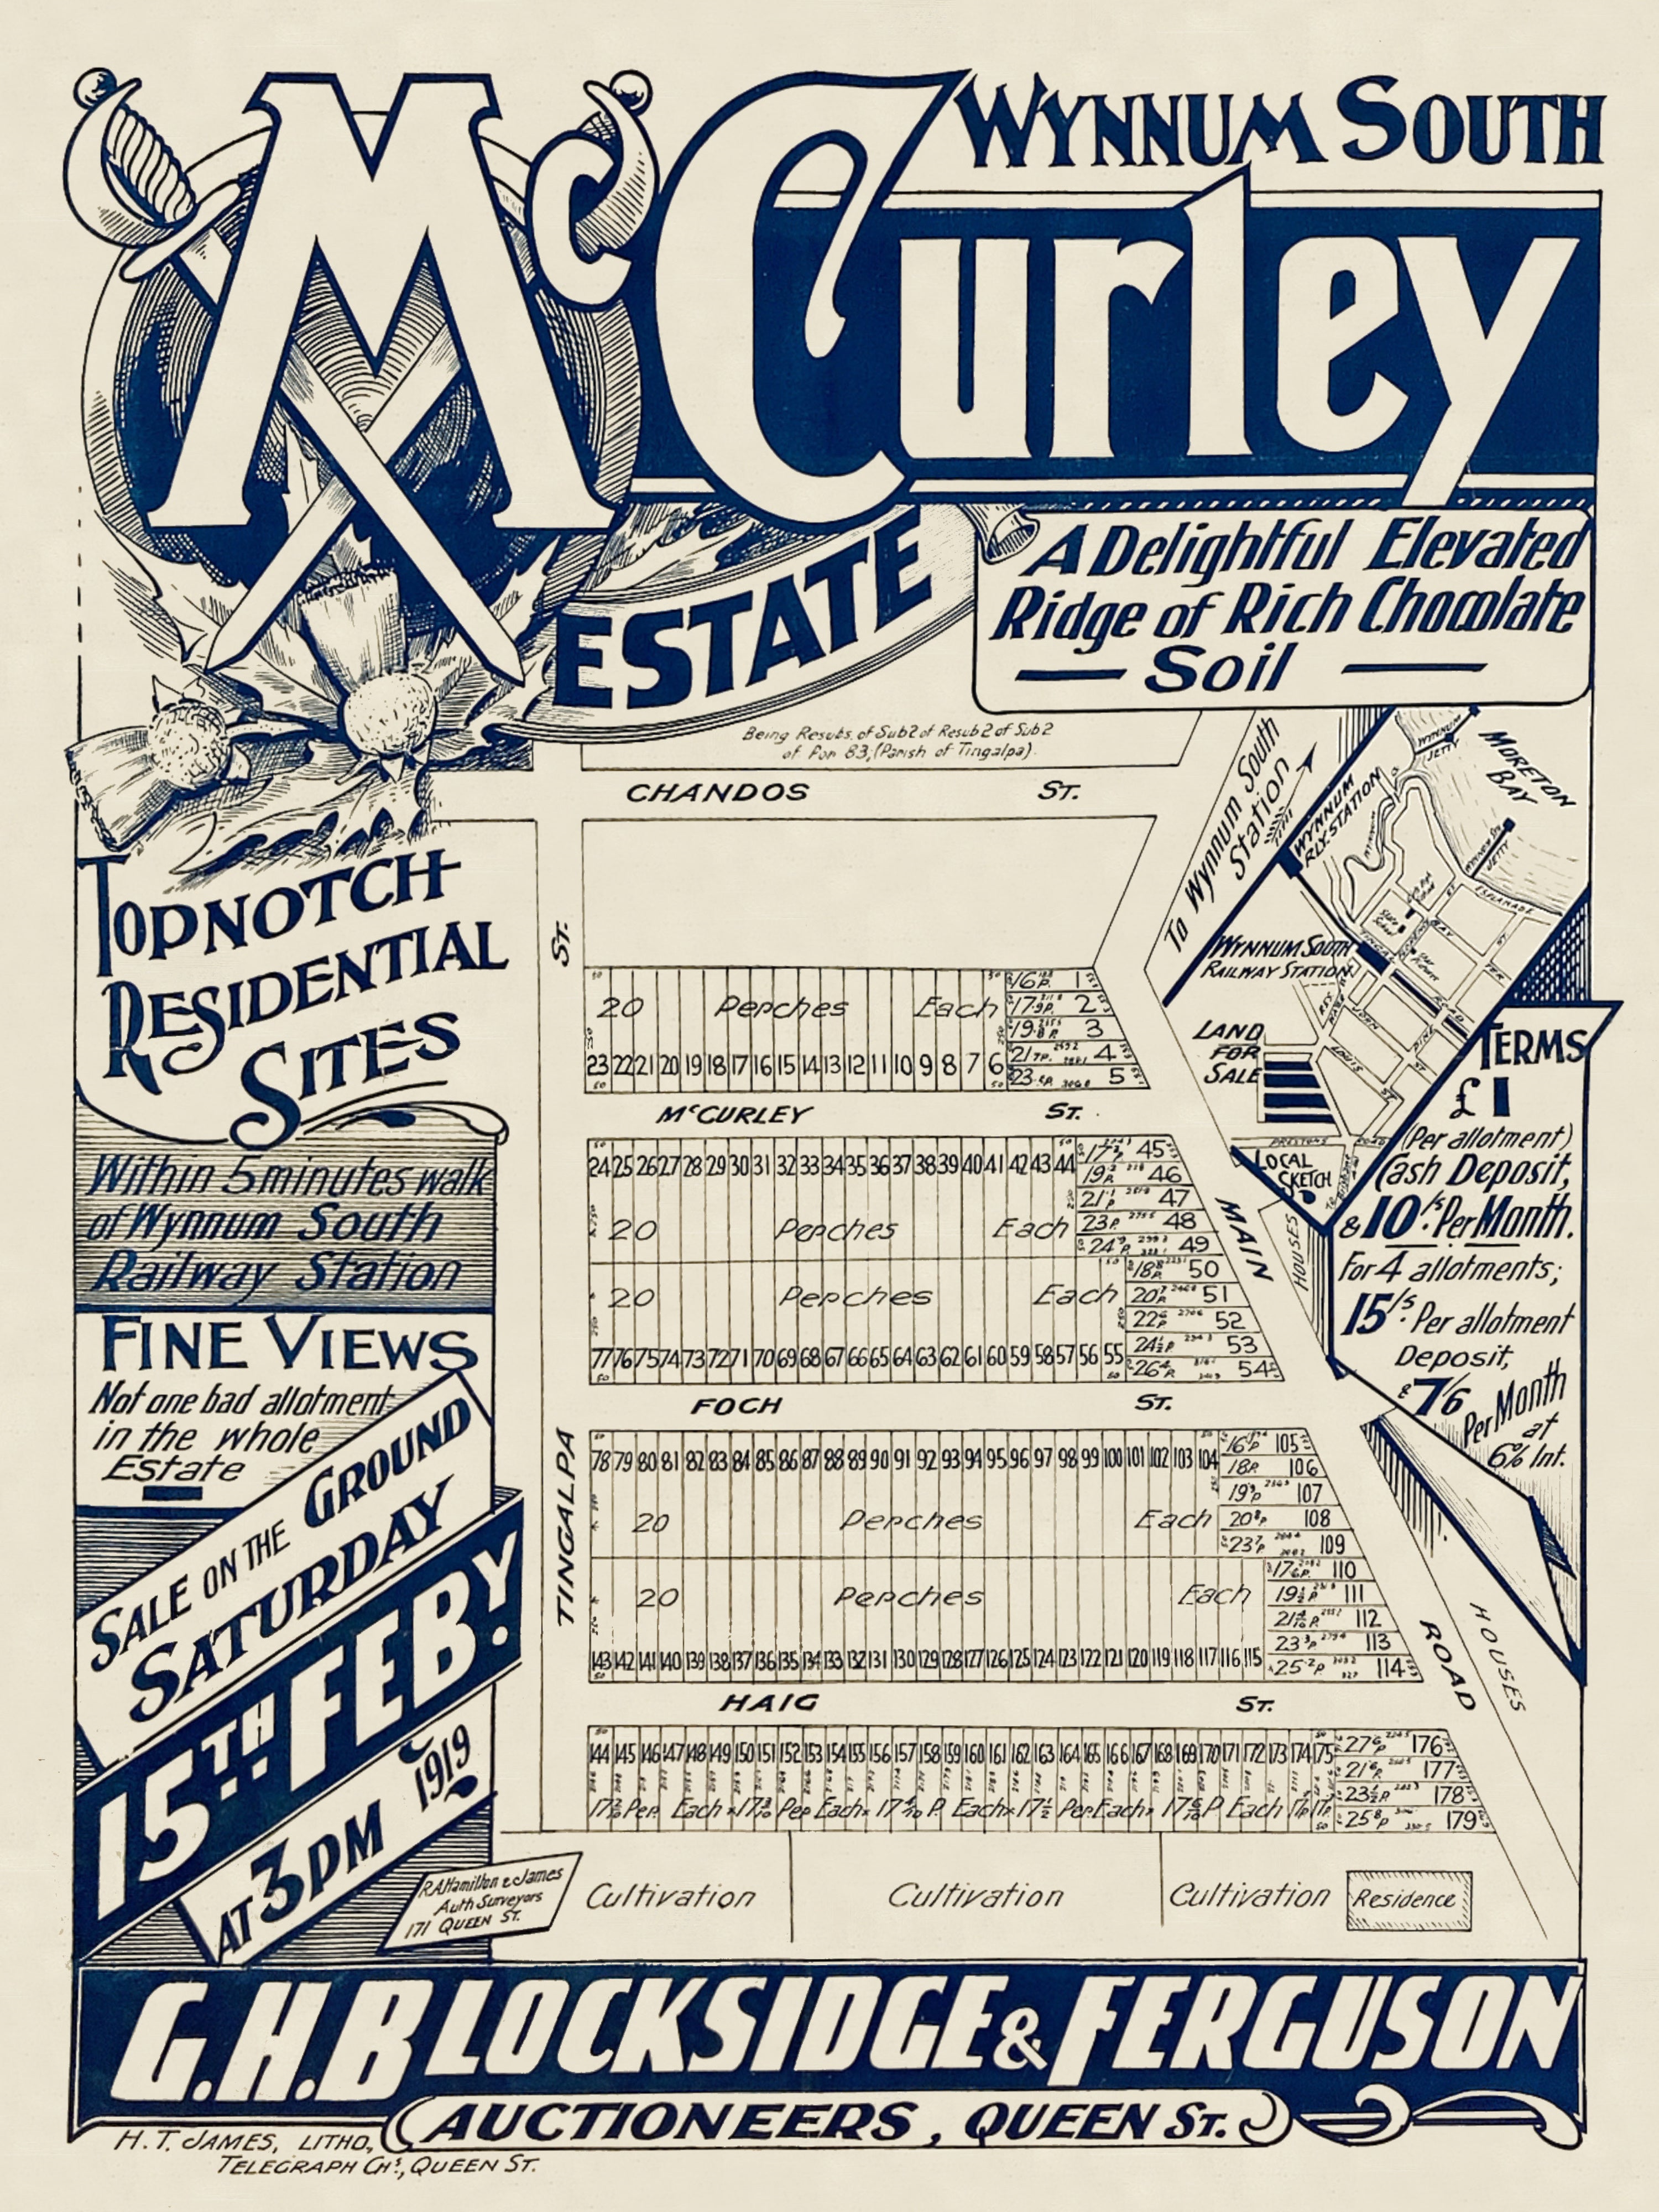 1919 Wynnum West - McCurley Estate